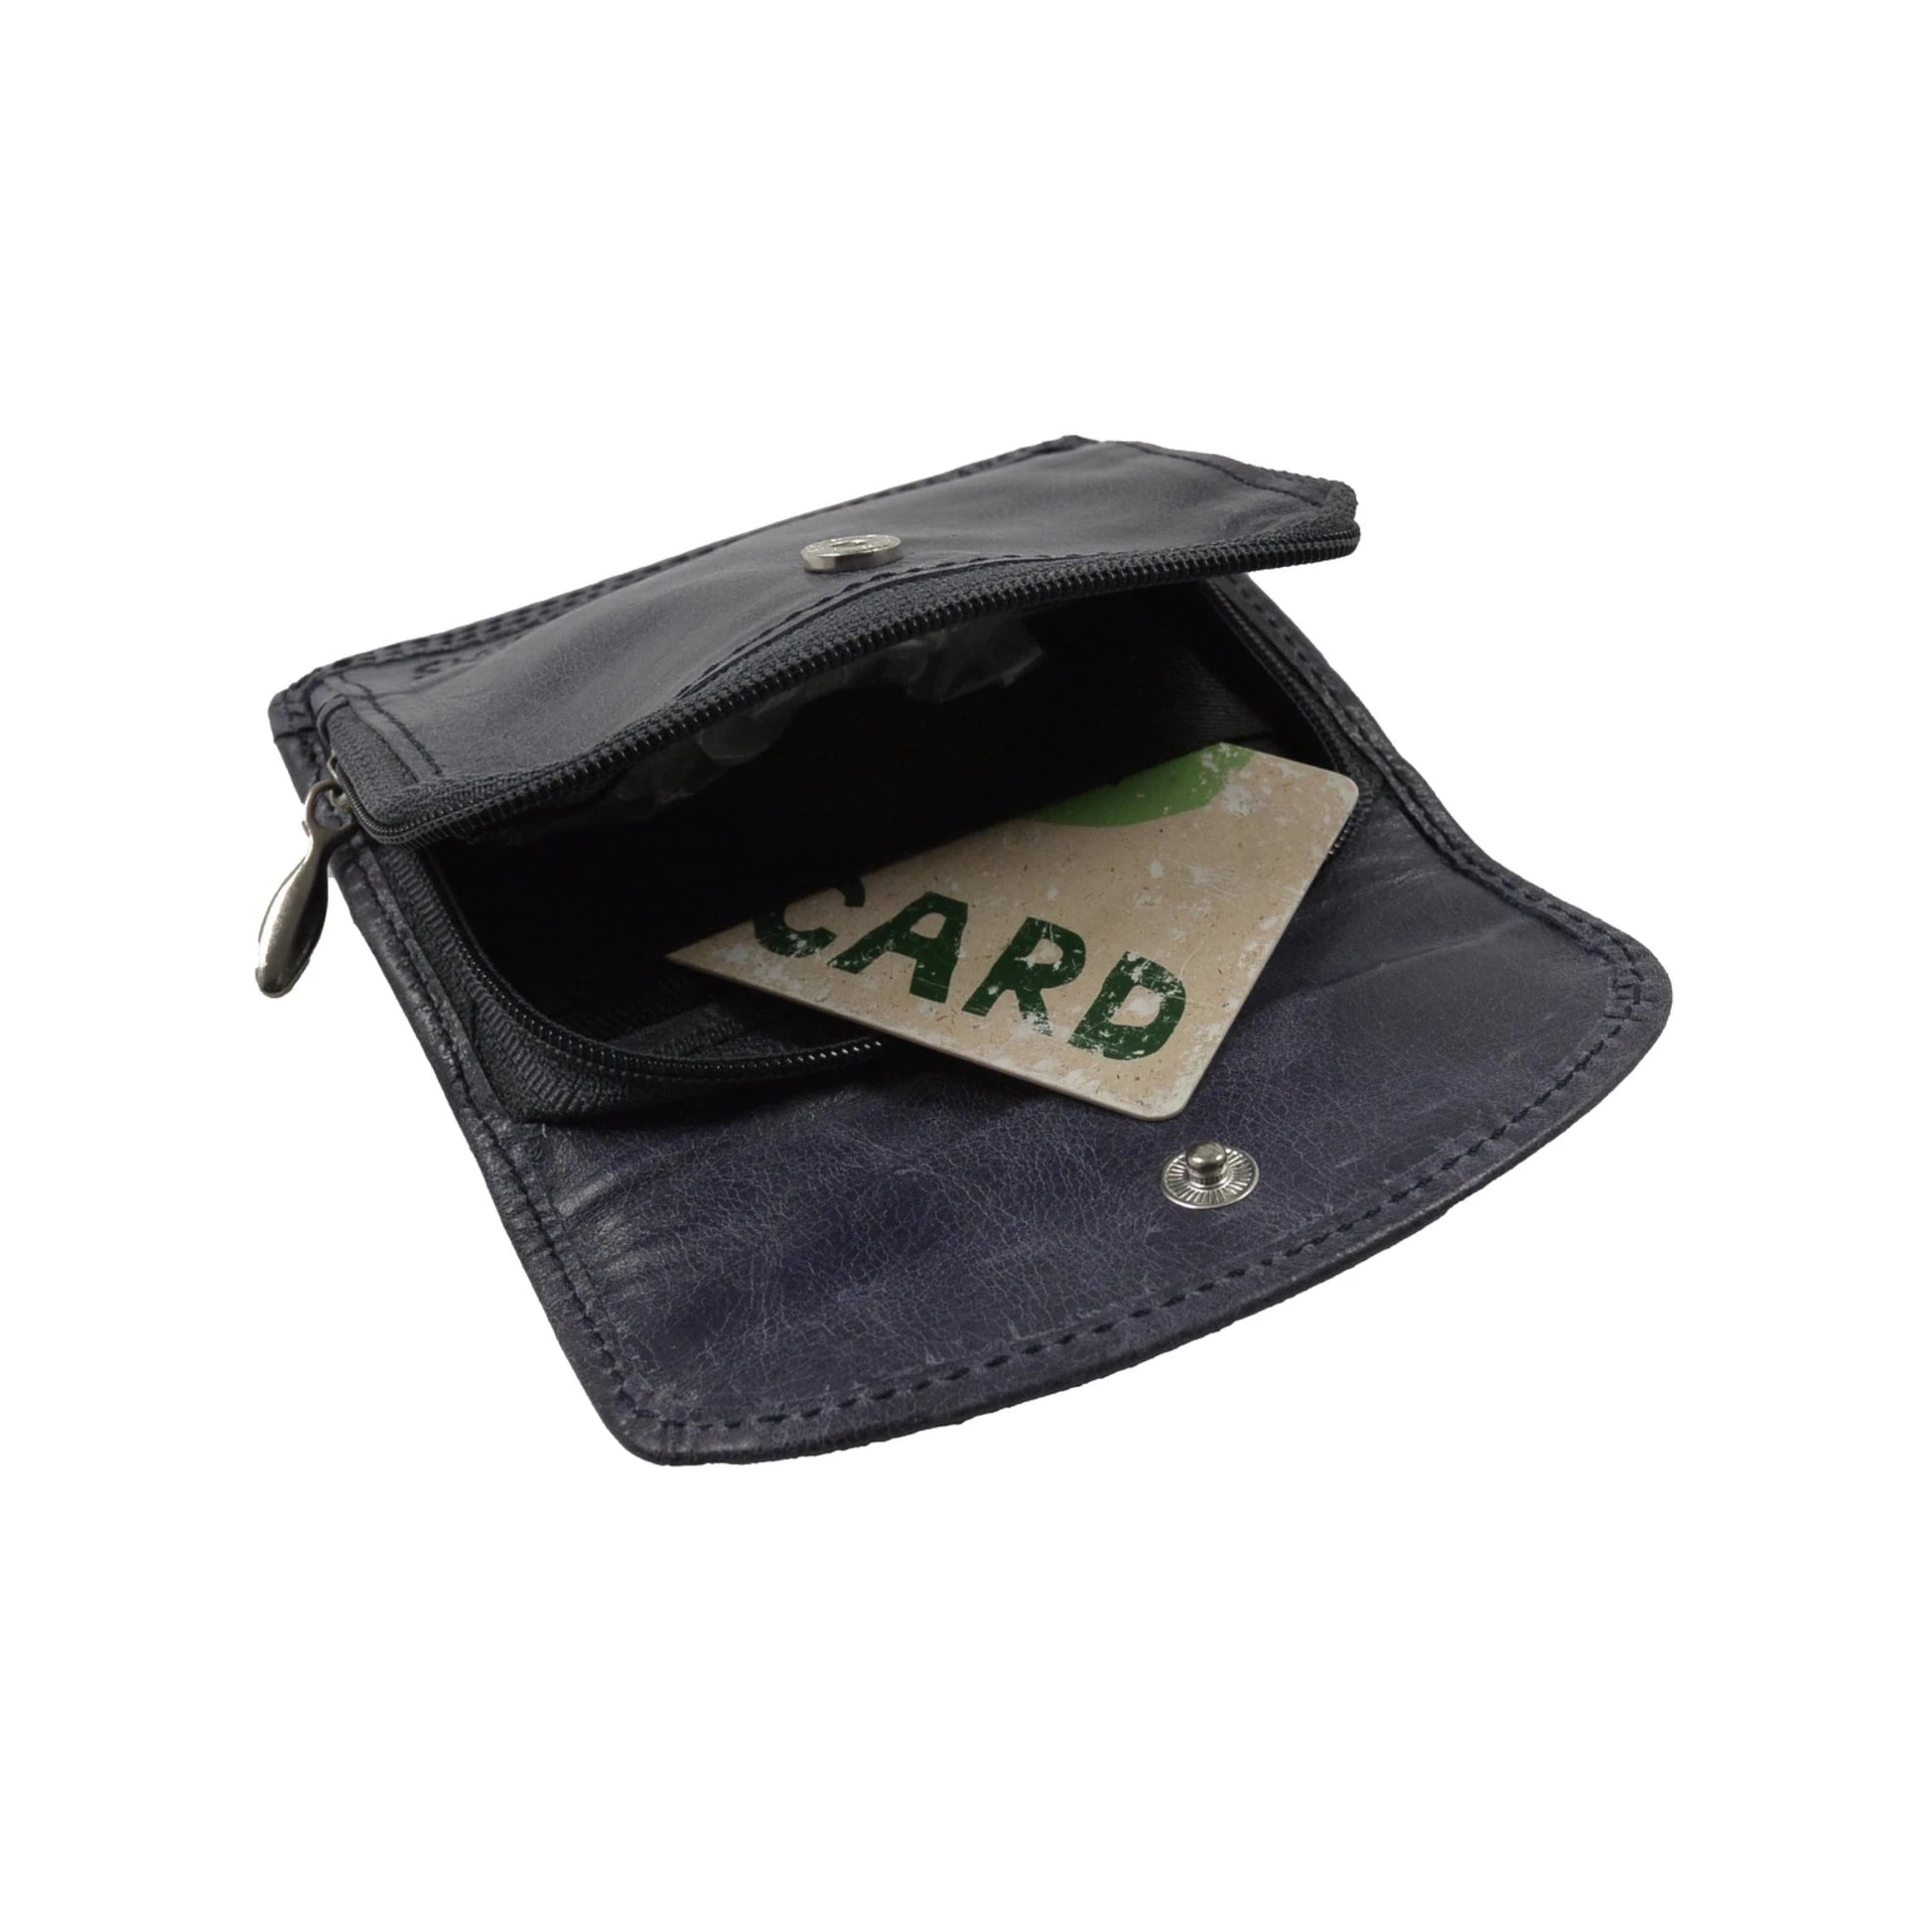 Kleines Portemonnaie, Geldbörse aus Leder, pflaumenfarben, mit Reißverschlussfach und einem integrierten Einsteckfach für eine Kreditkarte.